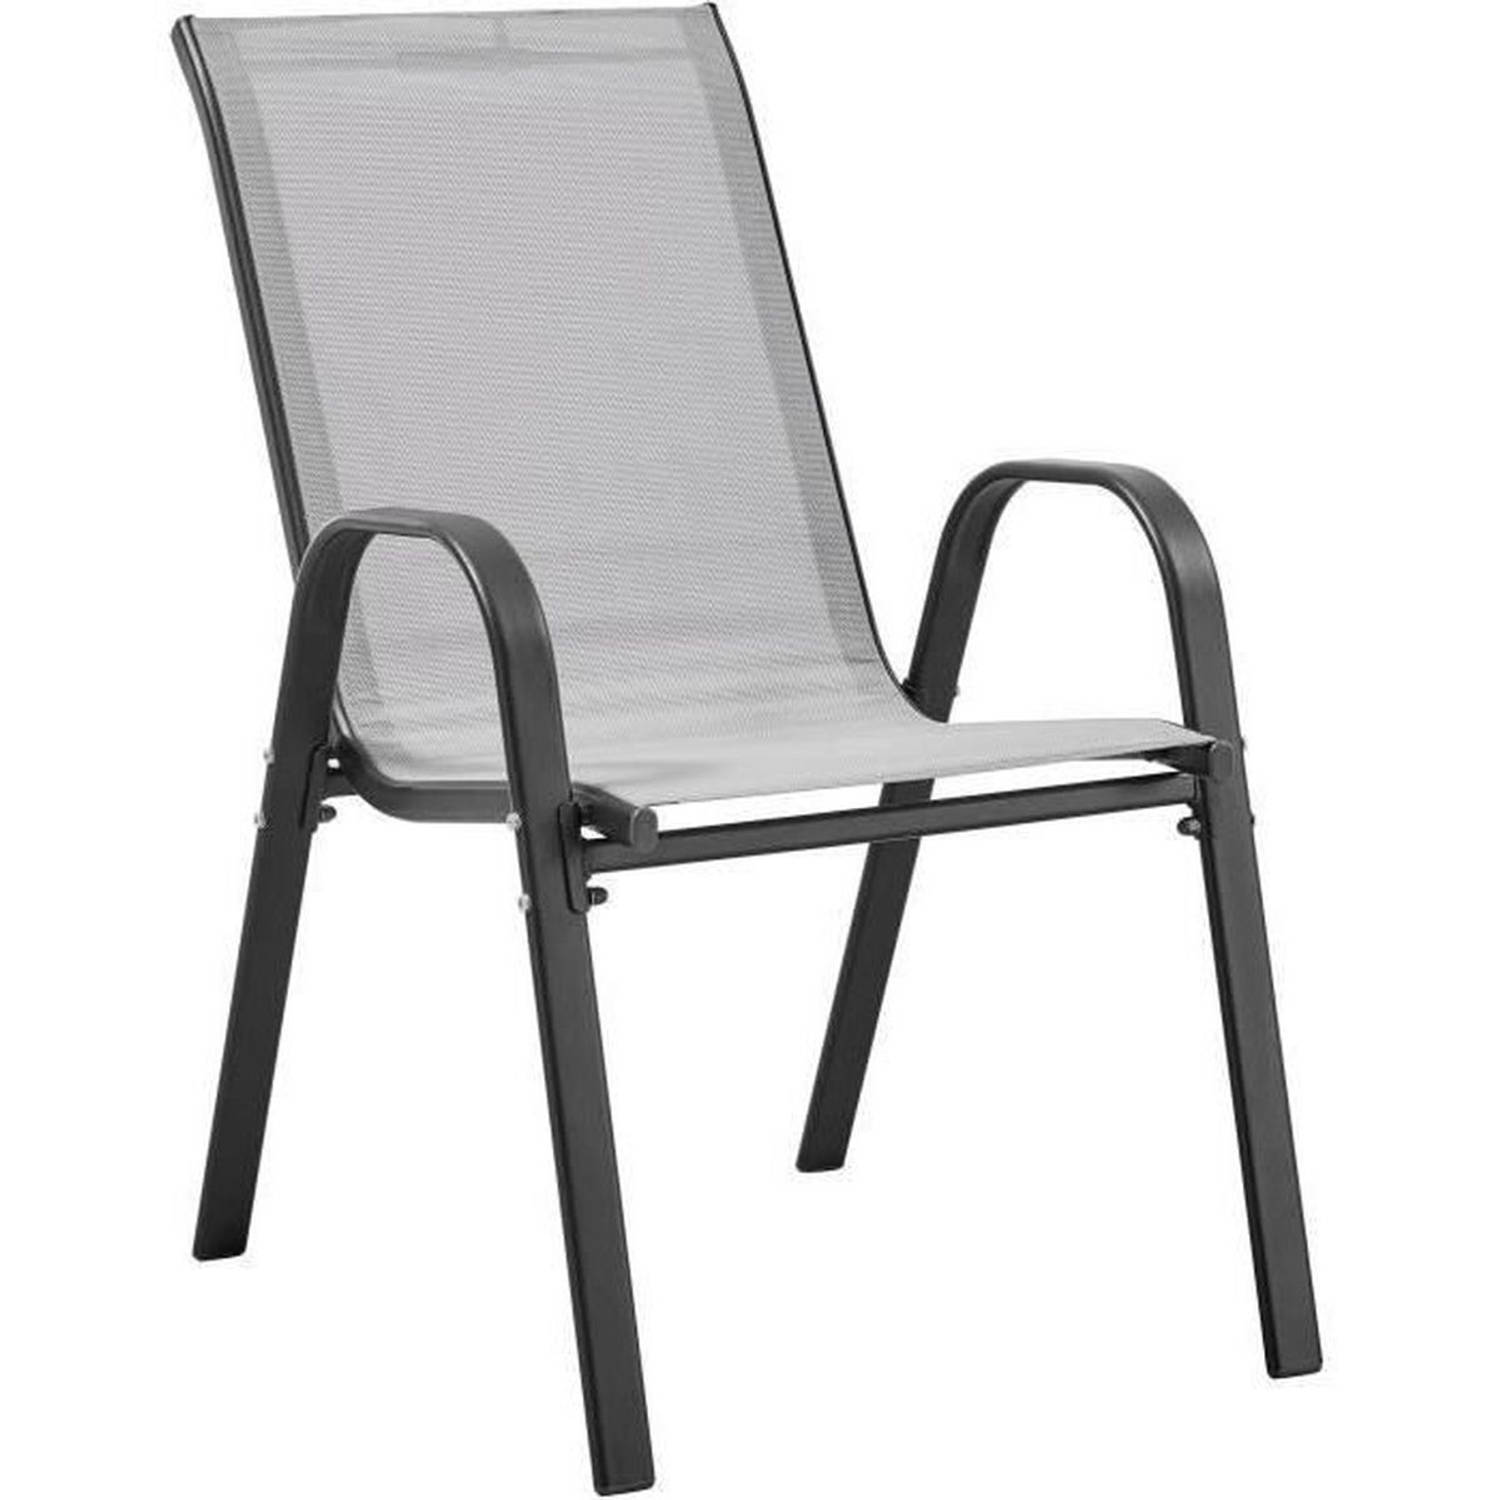 Set van 4 fauteuils - staal en textiel - hoogte van de stoel: 41 cm - grijs